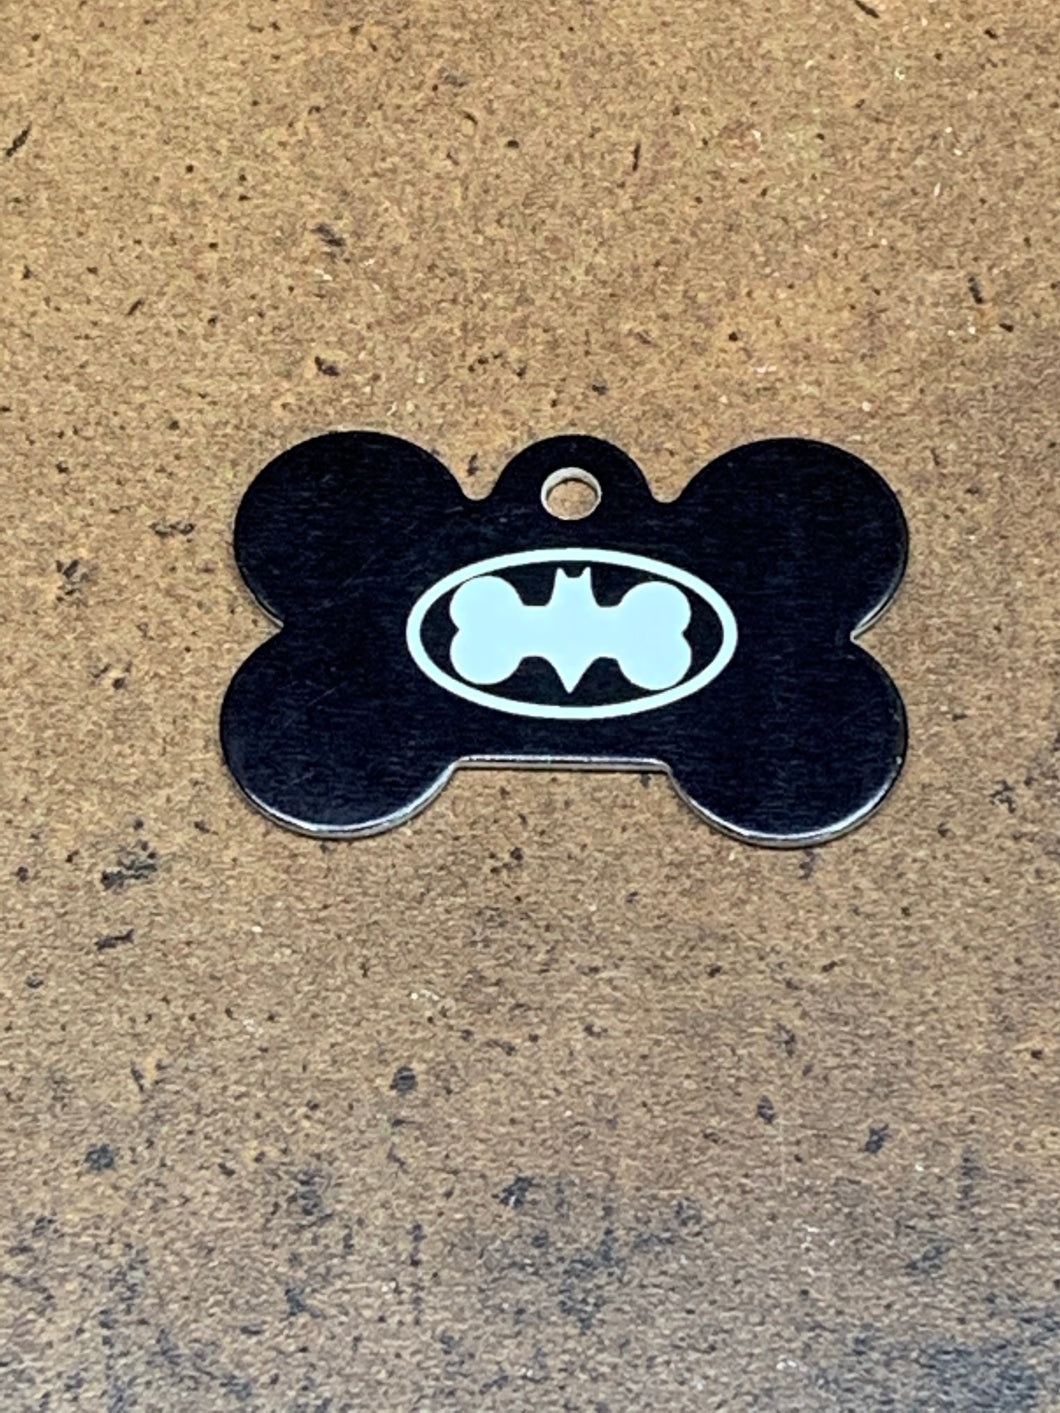 Bat symbol bone pet tag